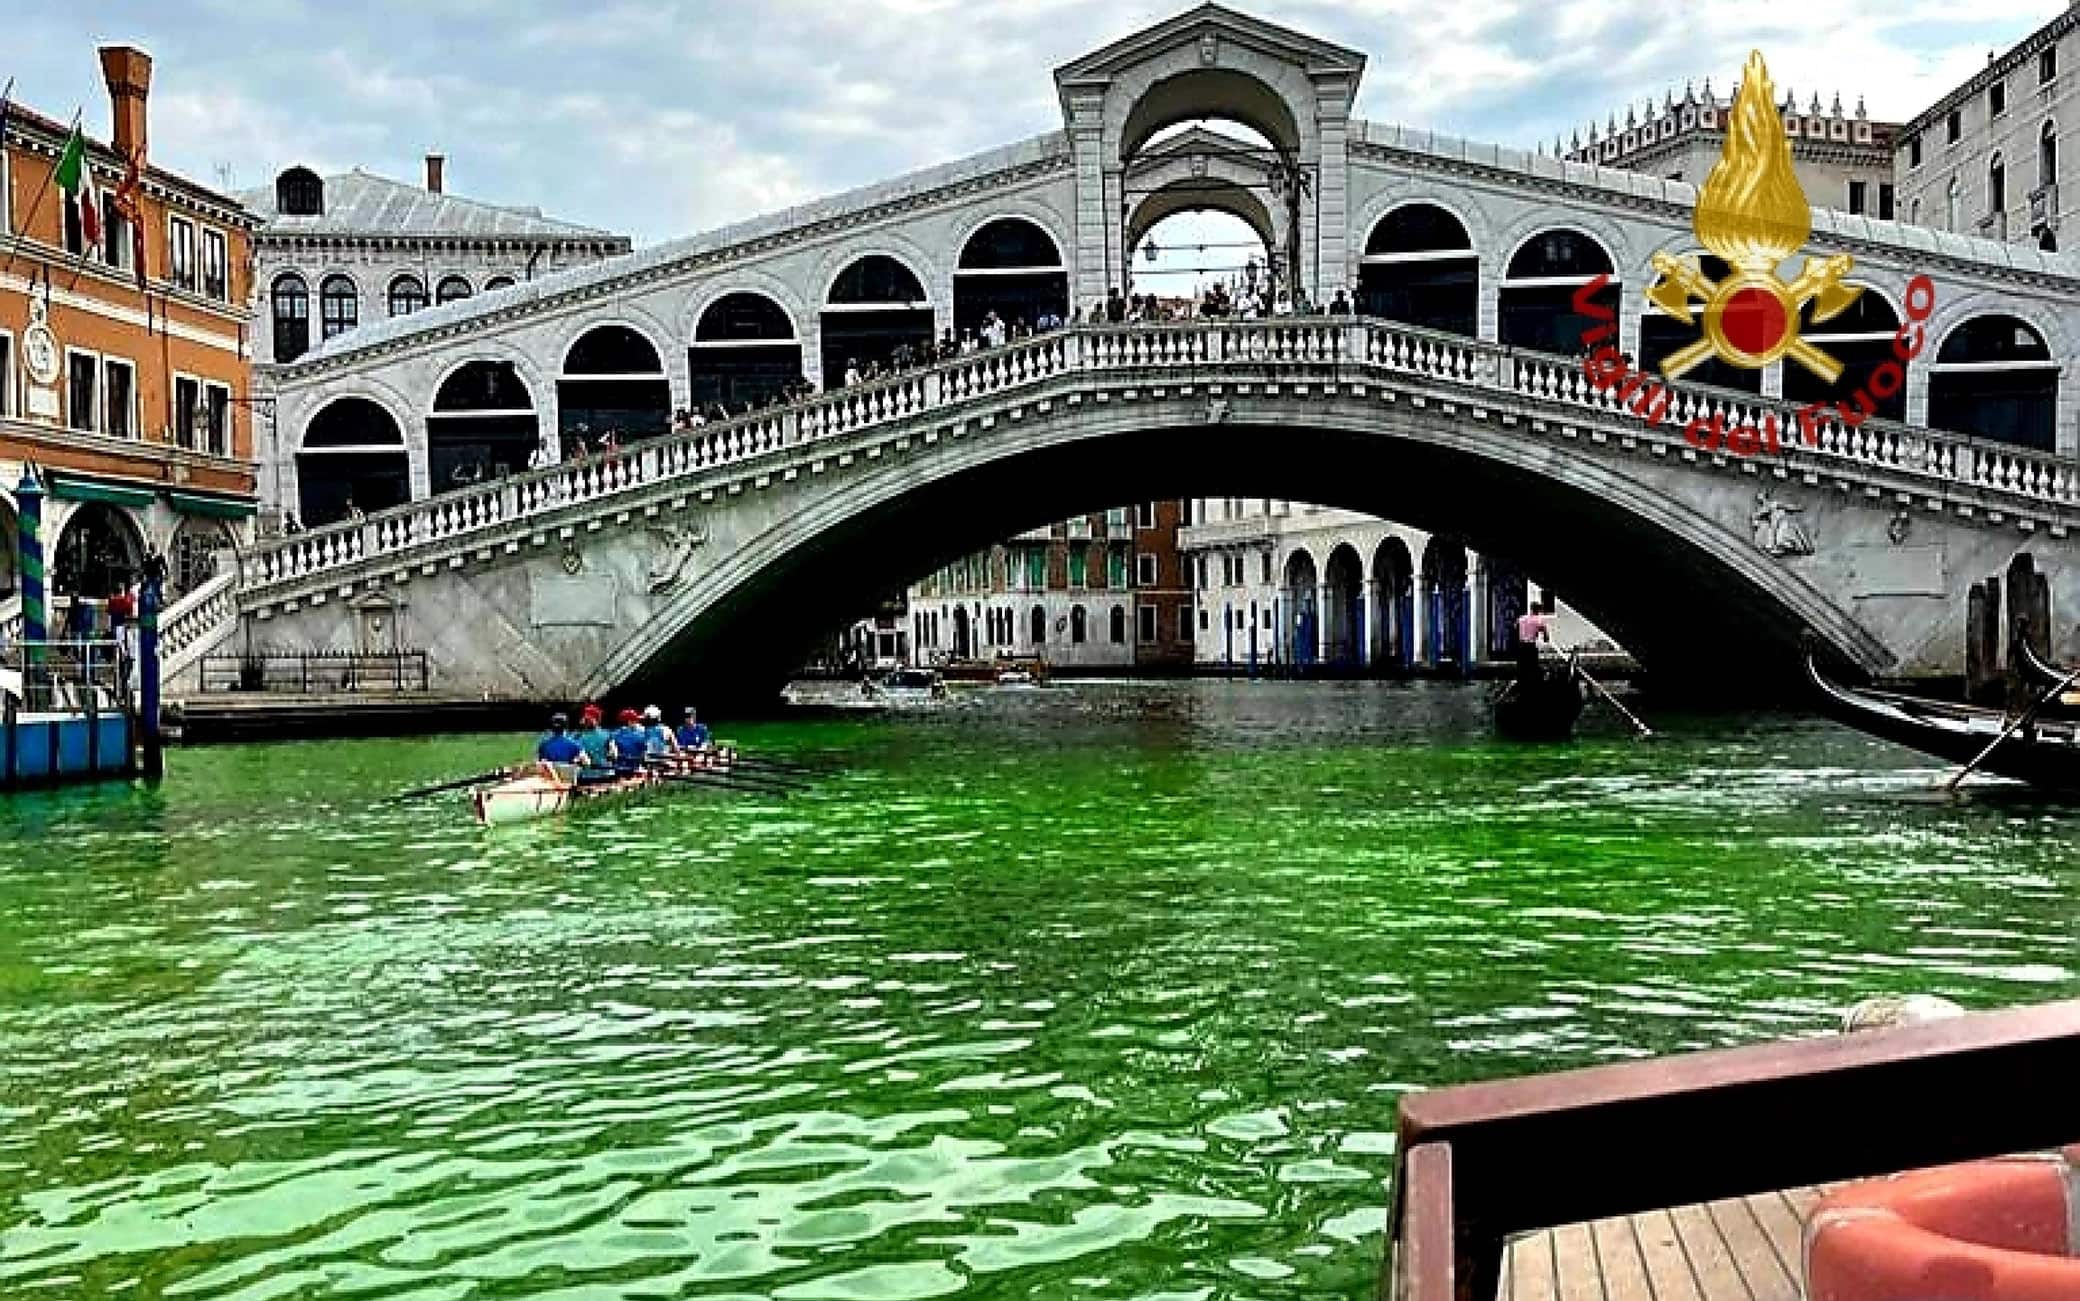 Una chiazza di liquido verde fosforescente è apparsa stamani sul Canal Grande all'altezza del Ponte di Rialto, Venezia, 28 maggio 2023.ANSA/Vigili del fuoco + UFFICIO STAMPA, PRESS OFFICE, HANDOUT PHOTO, NO SALES, EDITORIAL USE ONLY + NPK